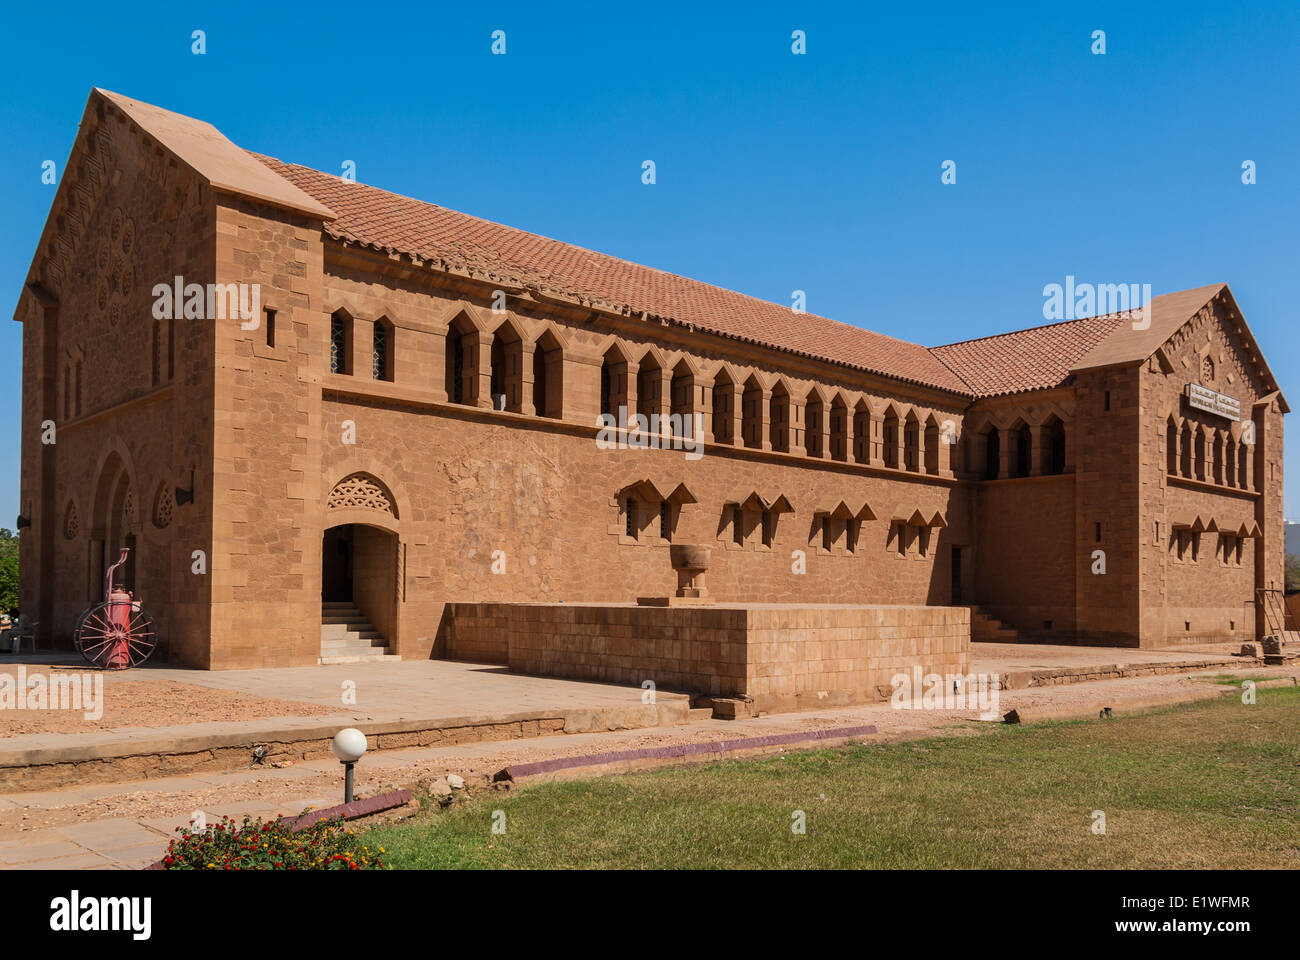 Republican Palace Museum, Khartoum, Sudan Stock Photo